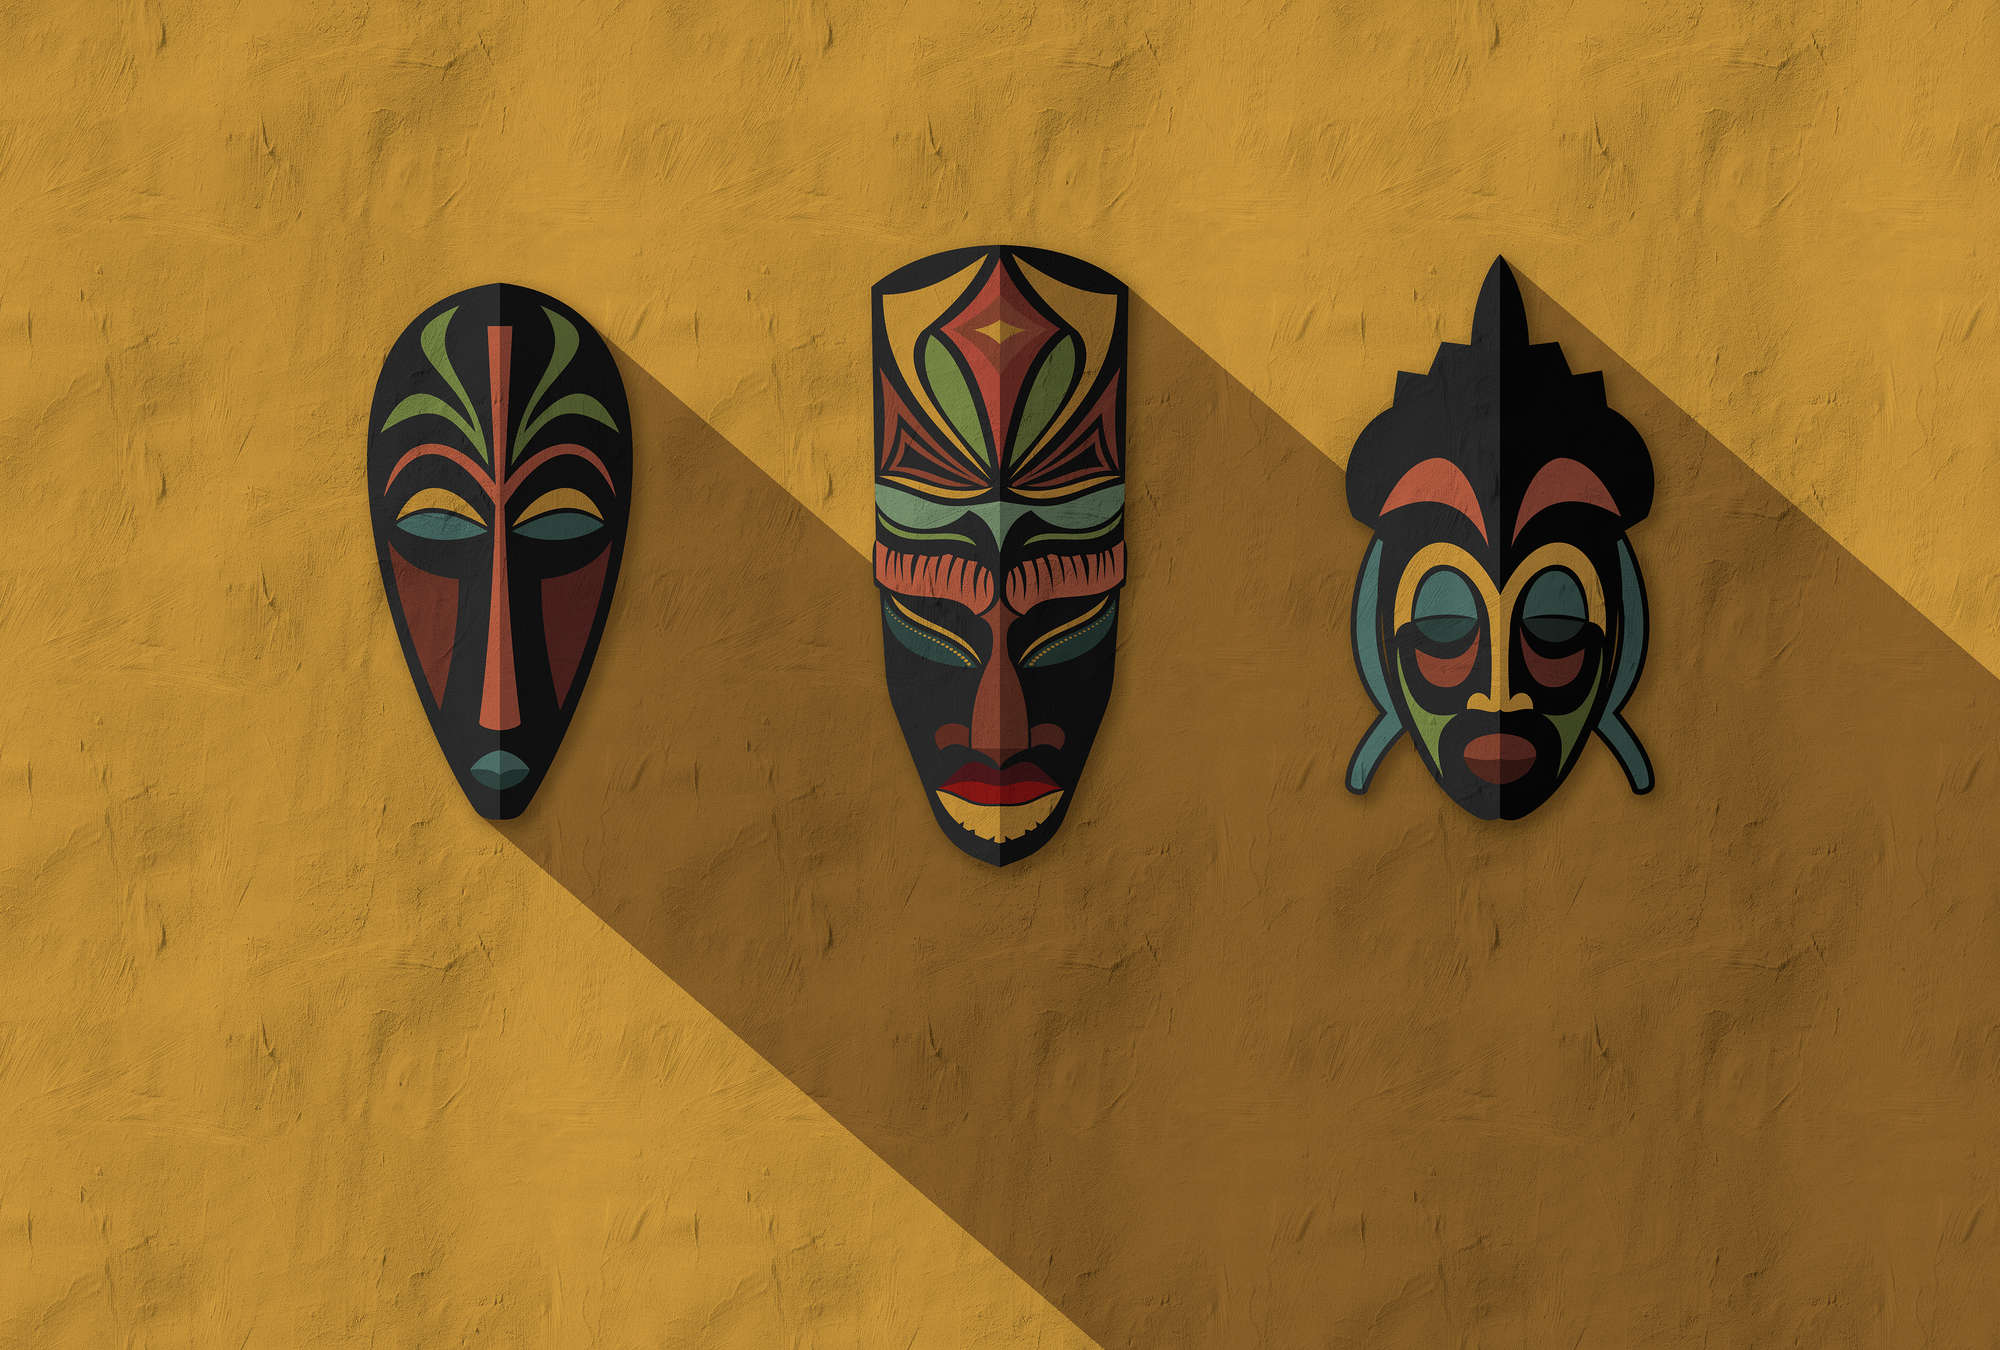             Zulú 1 - Mural de pared amarillo mostaza, máscaras africanas Diseño Zulú
        